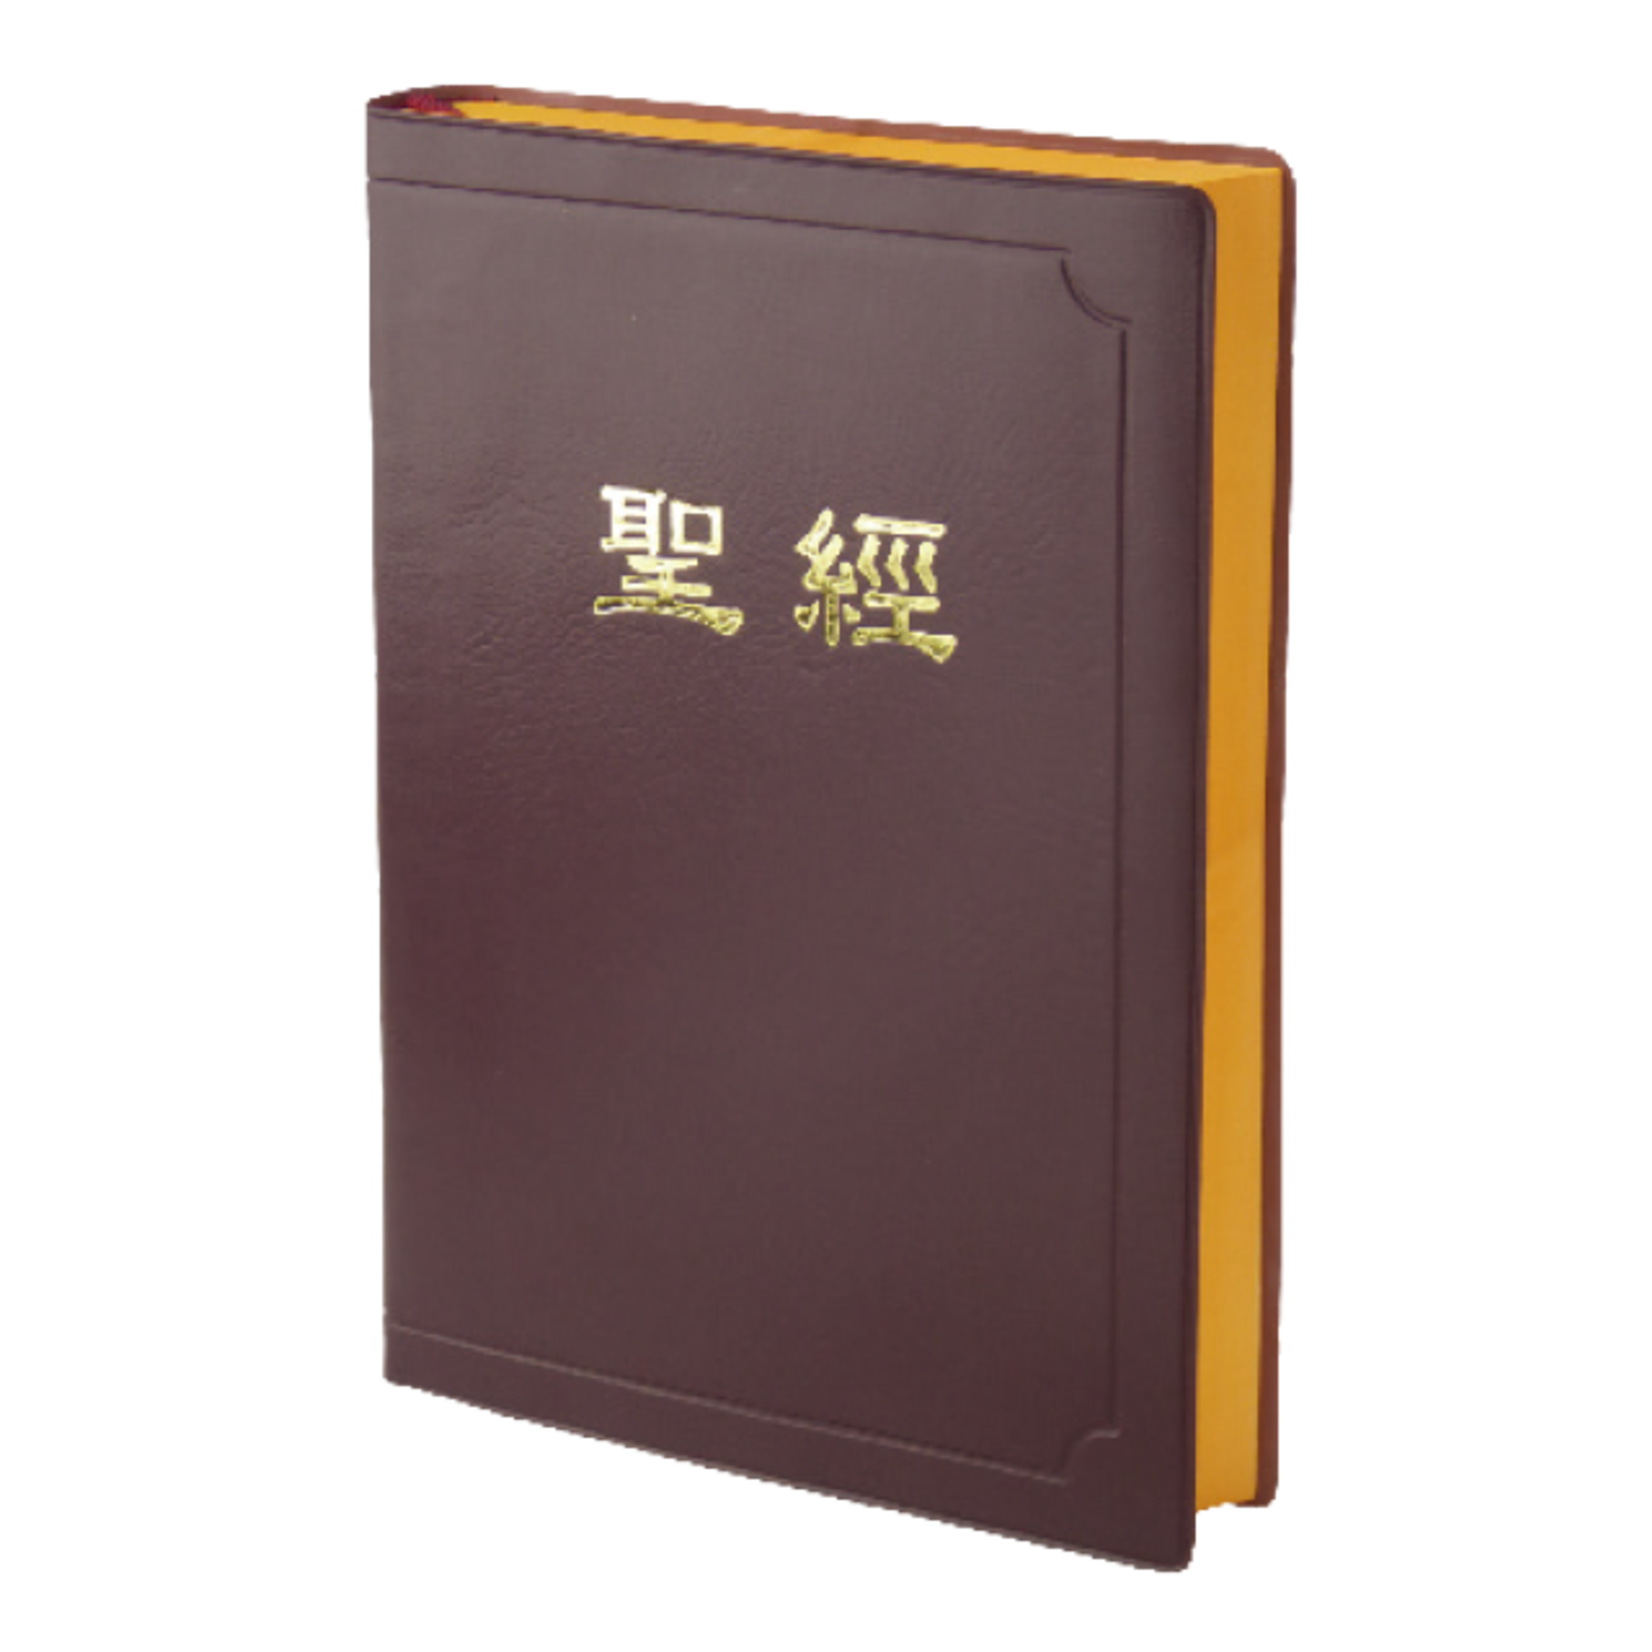 台灣聖經公會 The Bible Society in Taiwan 聖經．新標點和合本．上帝版／橫排型／串珠／啡色膠面黃邊（斷版）